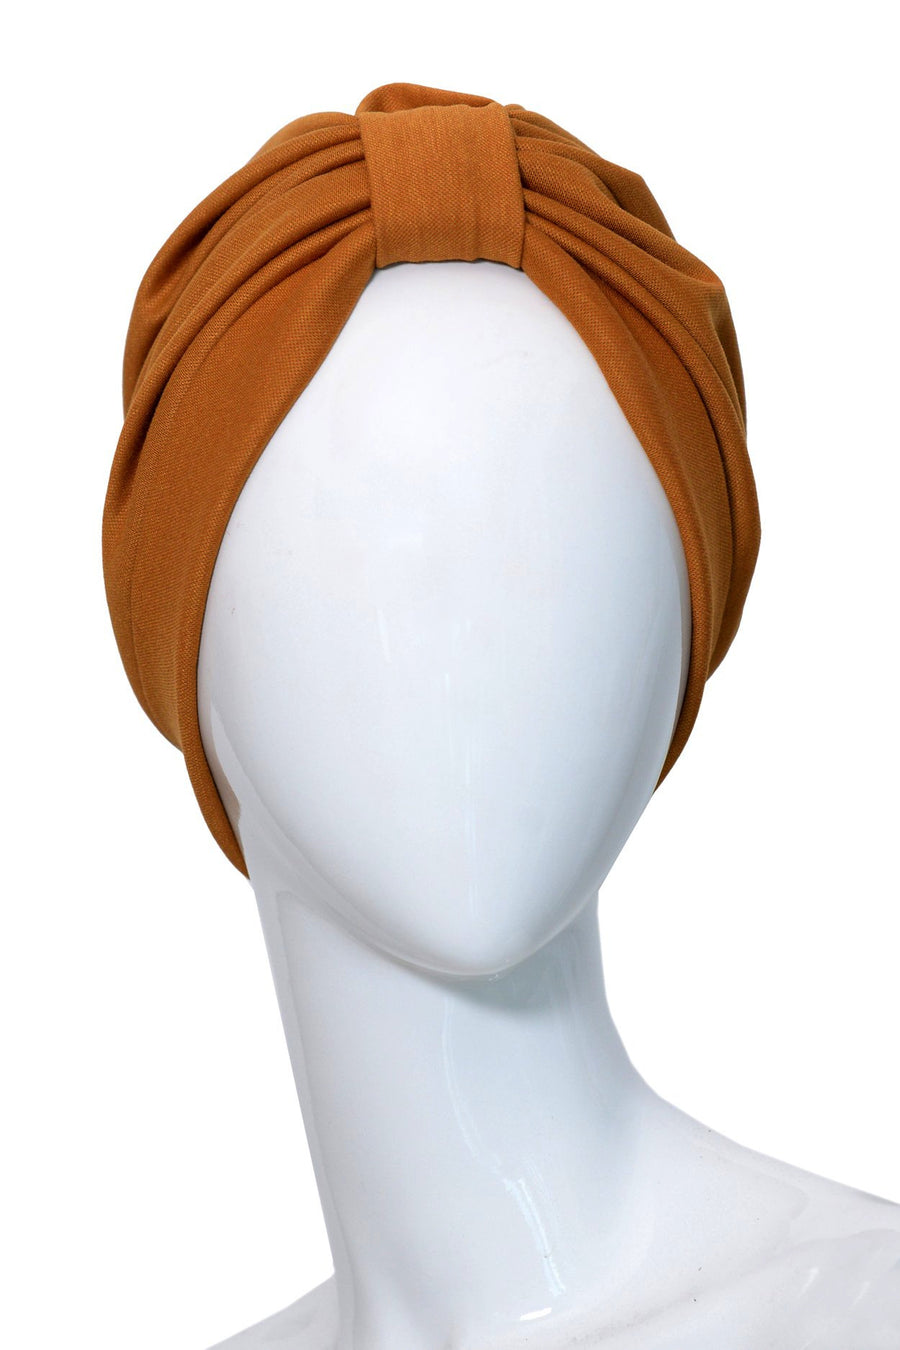 LIEGE Ochre turban for women